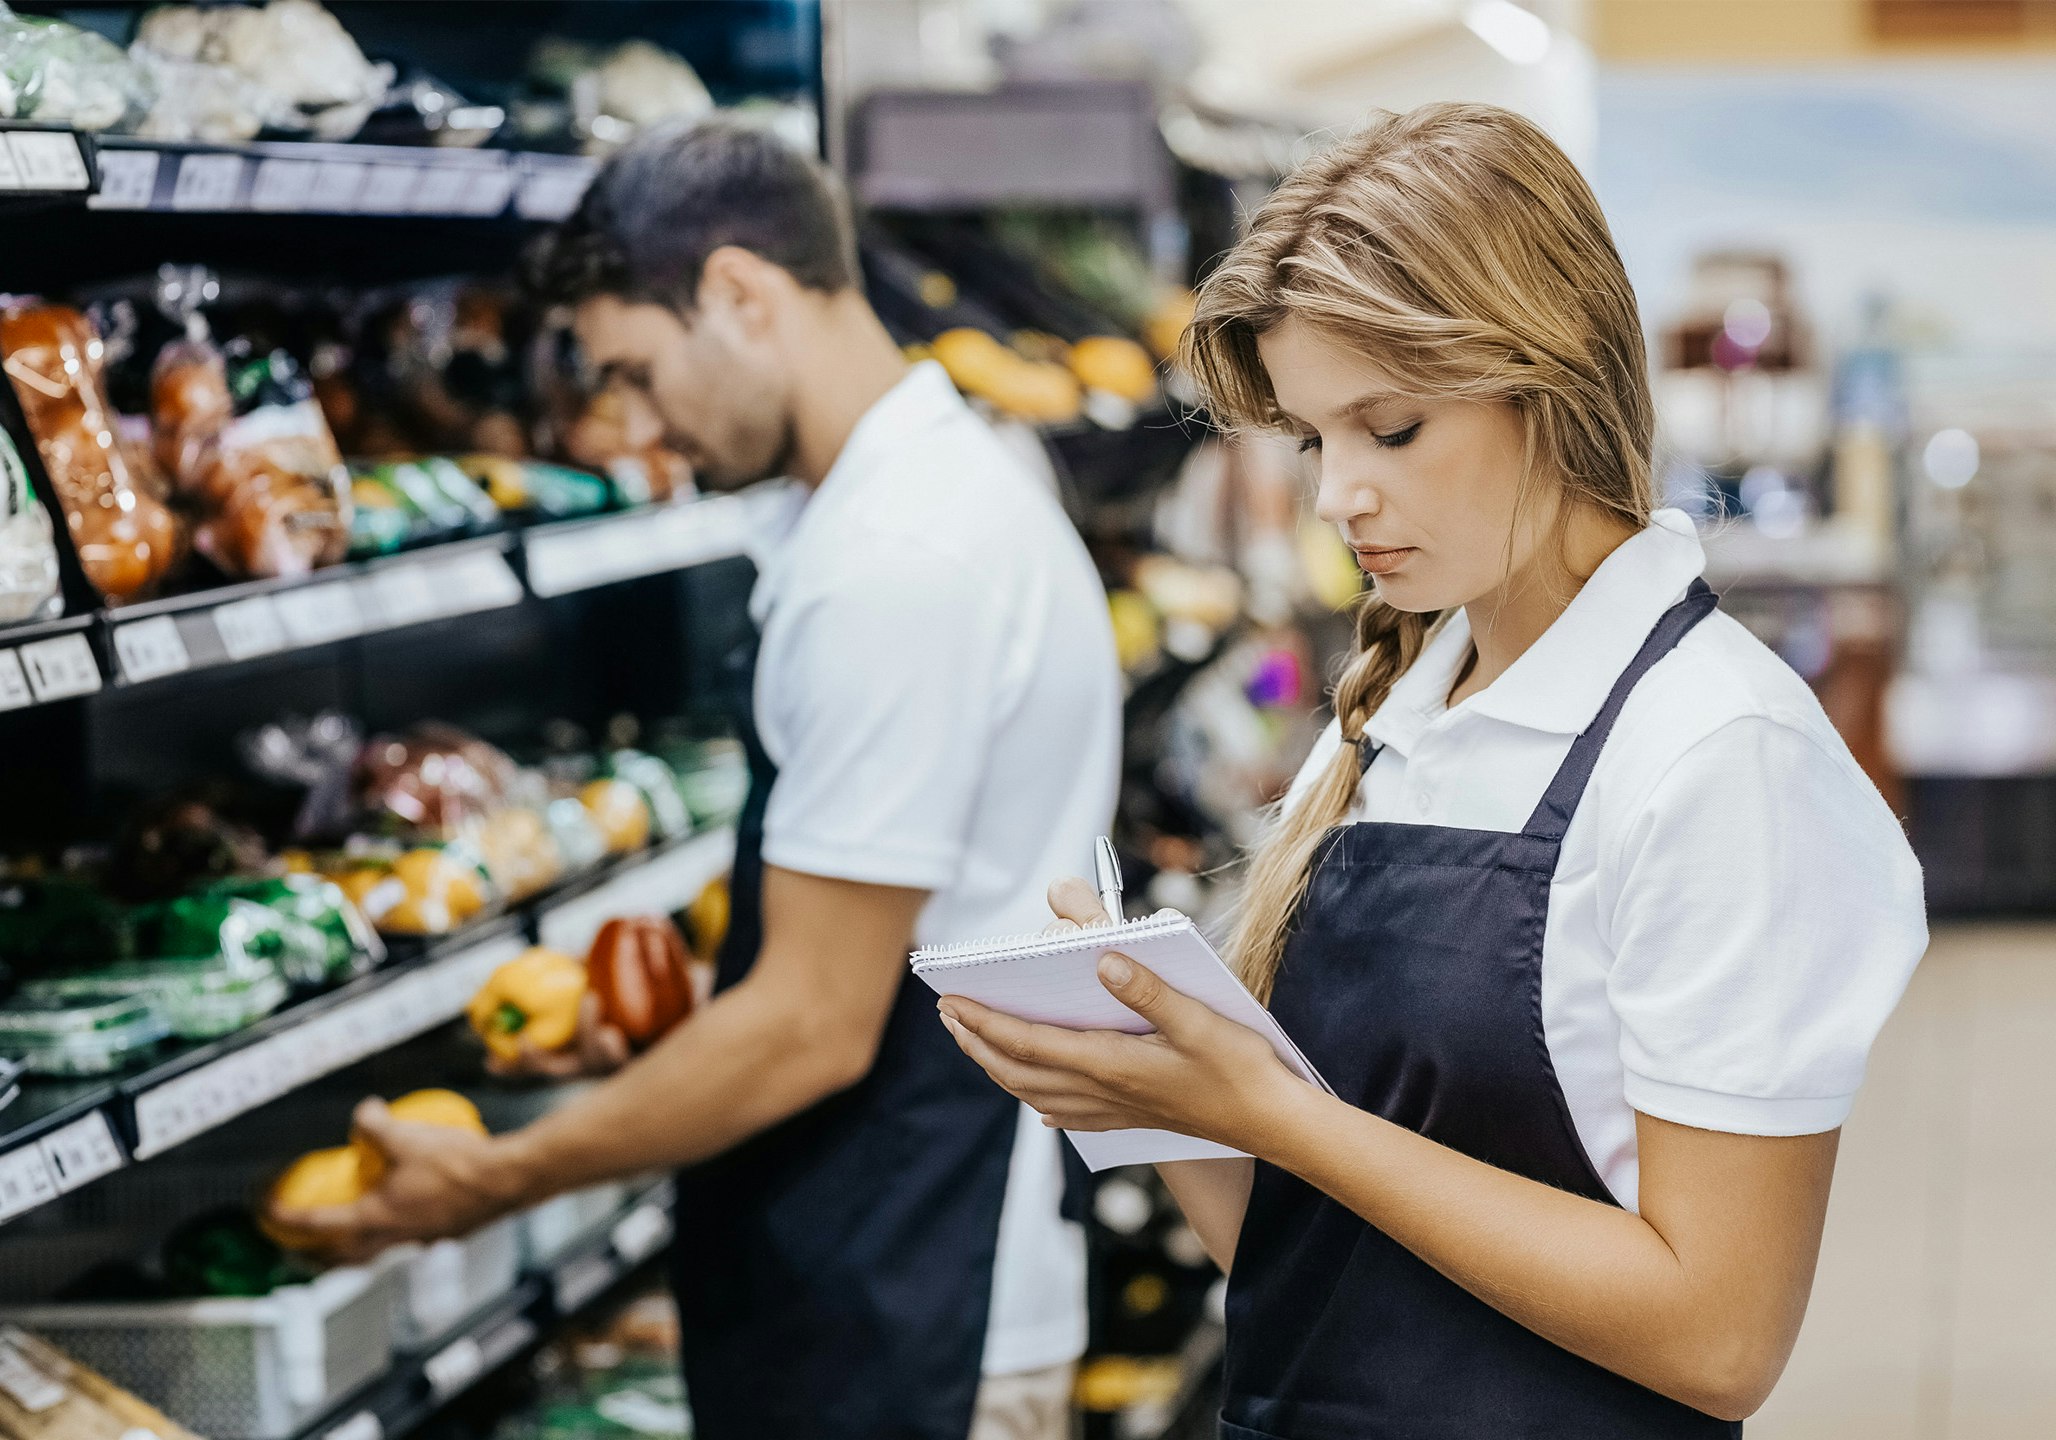 Frau steht vor Supermarktregal mit Schreibblock in der Hand und Mitarbeiter im Hintergrund räumt Regal ein